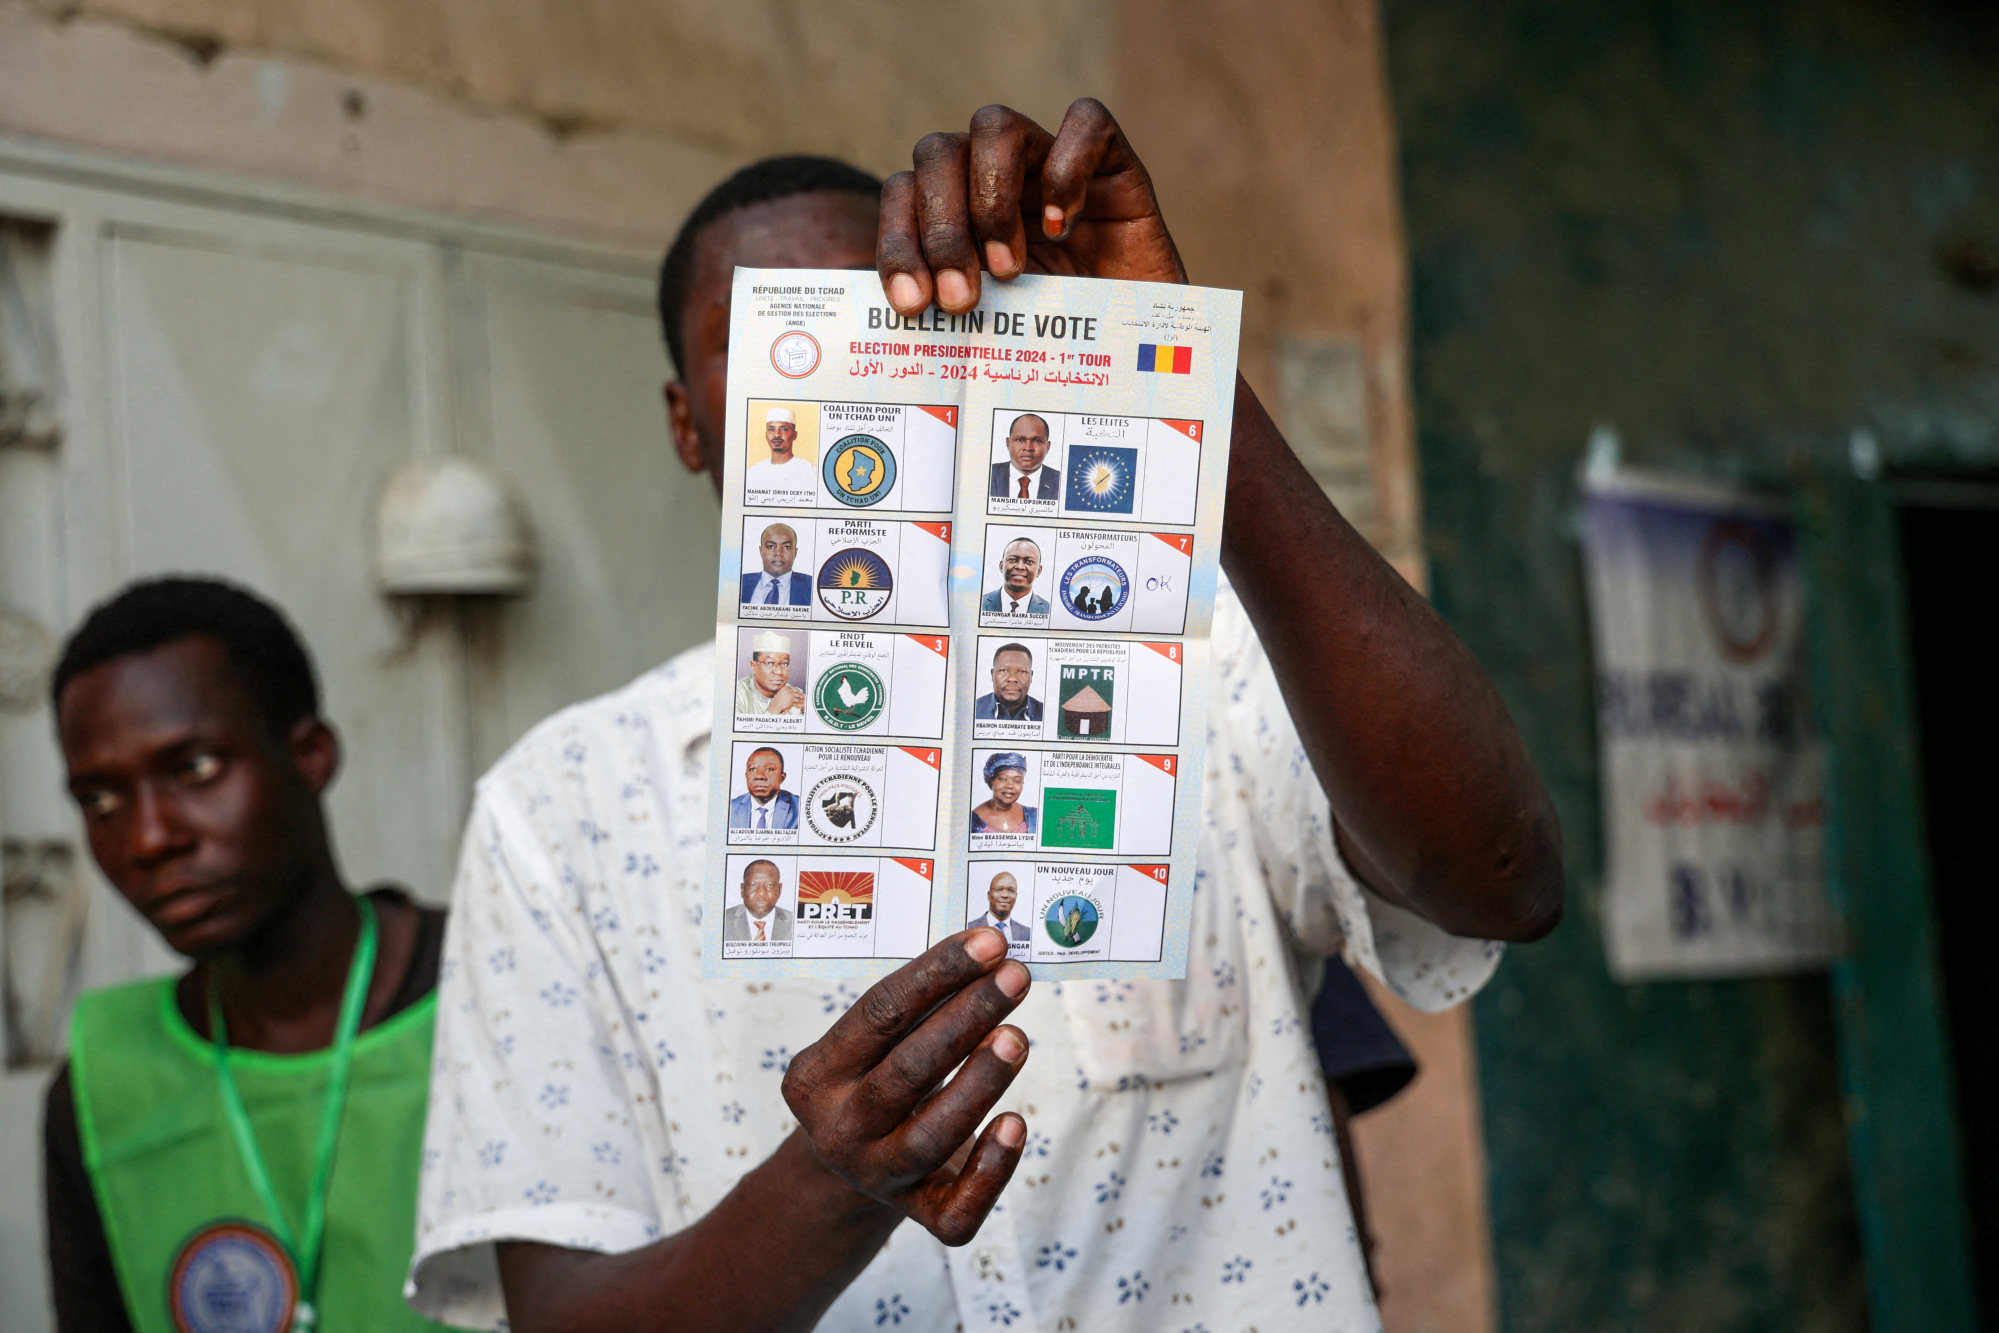 El jefe de la junta chadiana, Deby, declarado ganador de las disputadas elecciones presidenciales